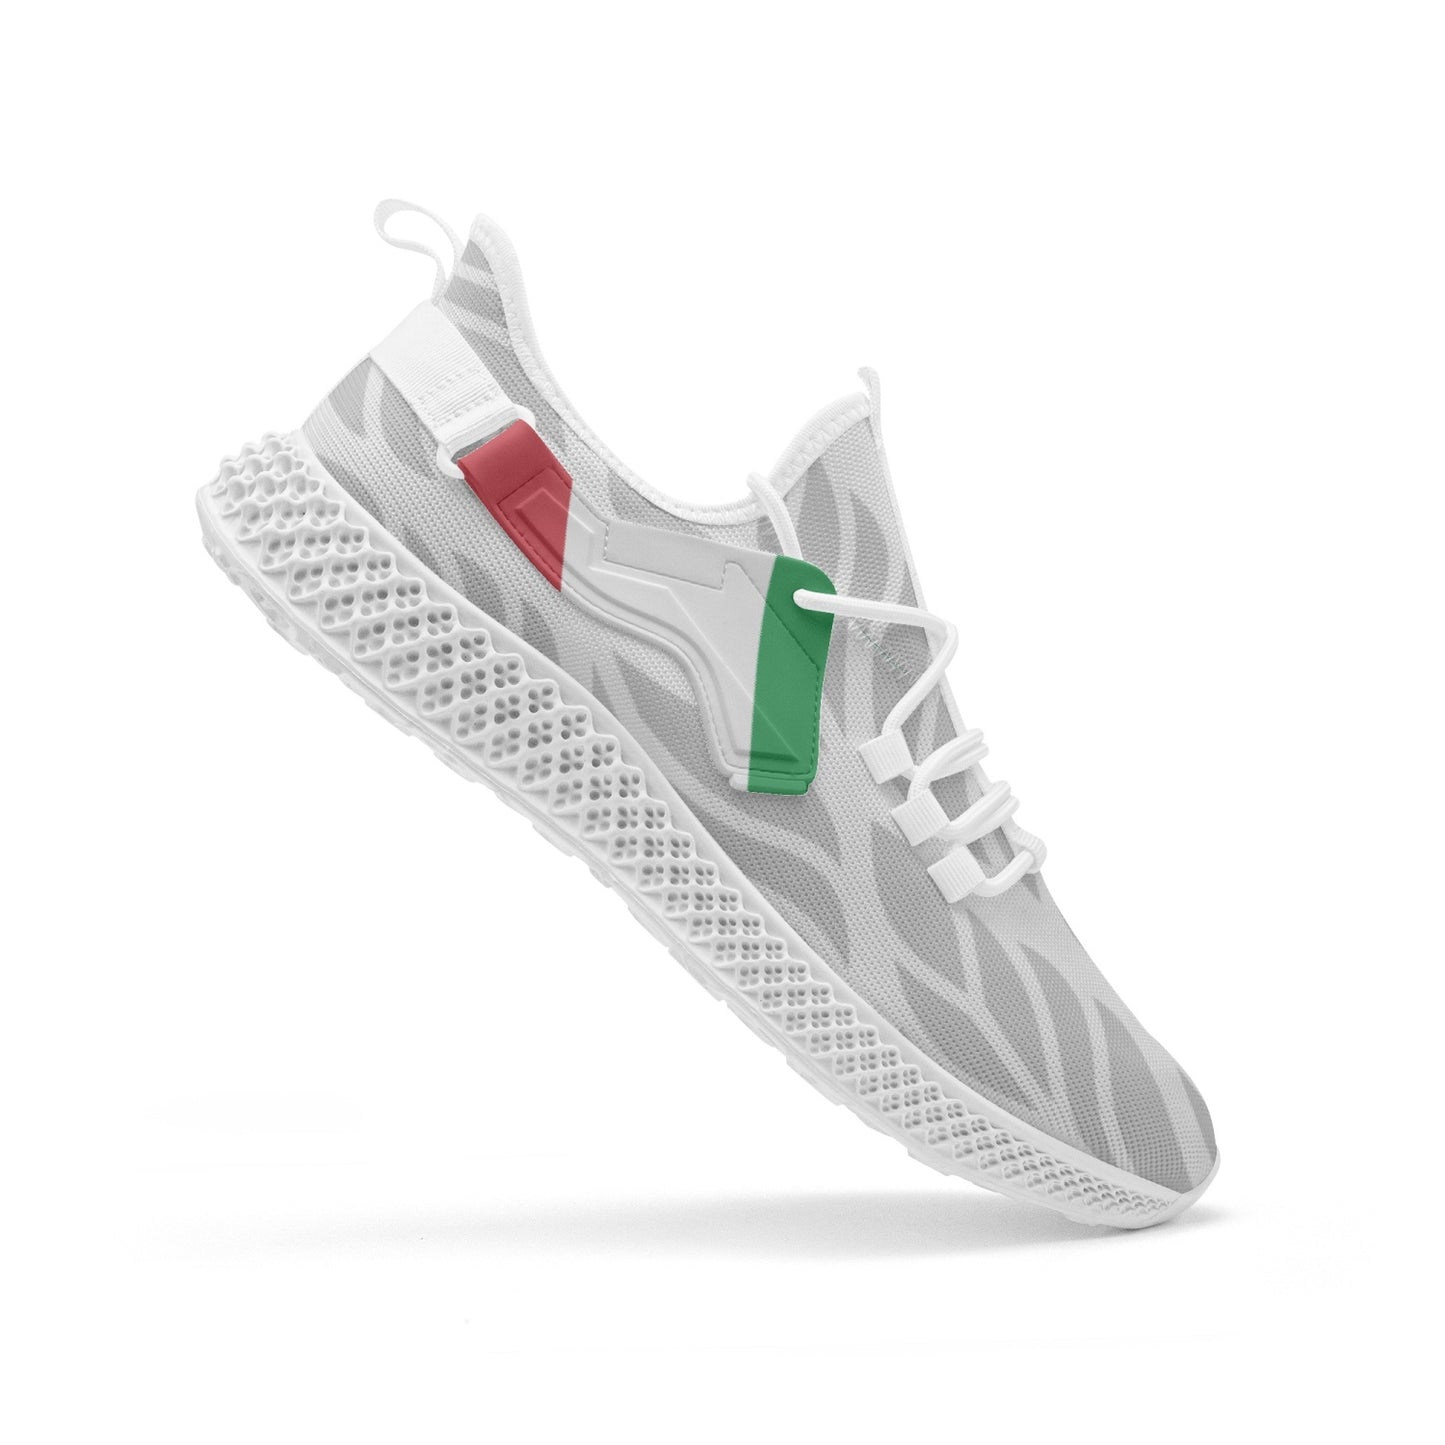 Italia Net Mesh Knit Sneakers Pattern - men/women sizes